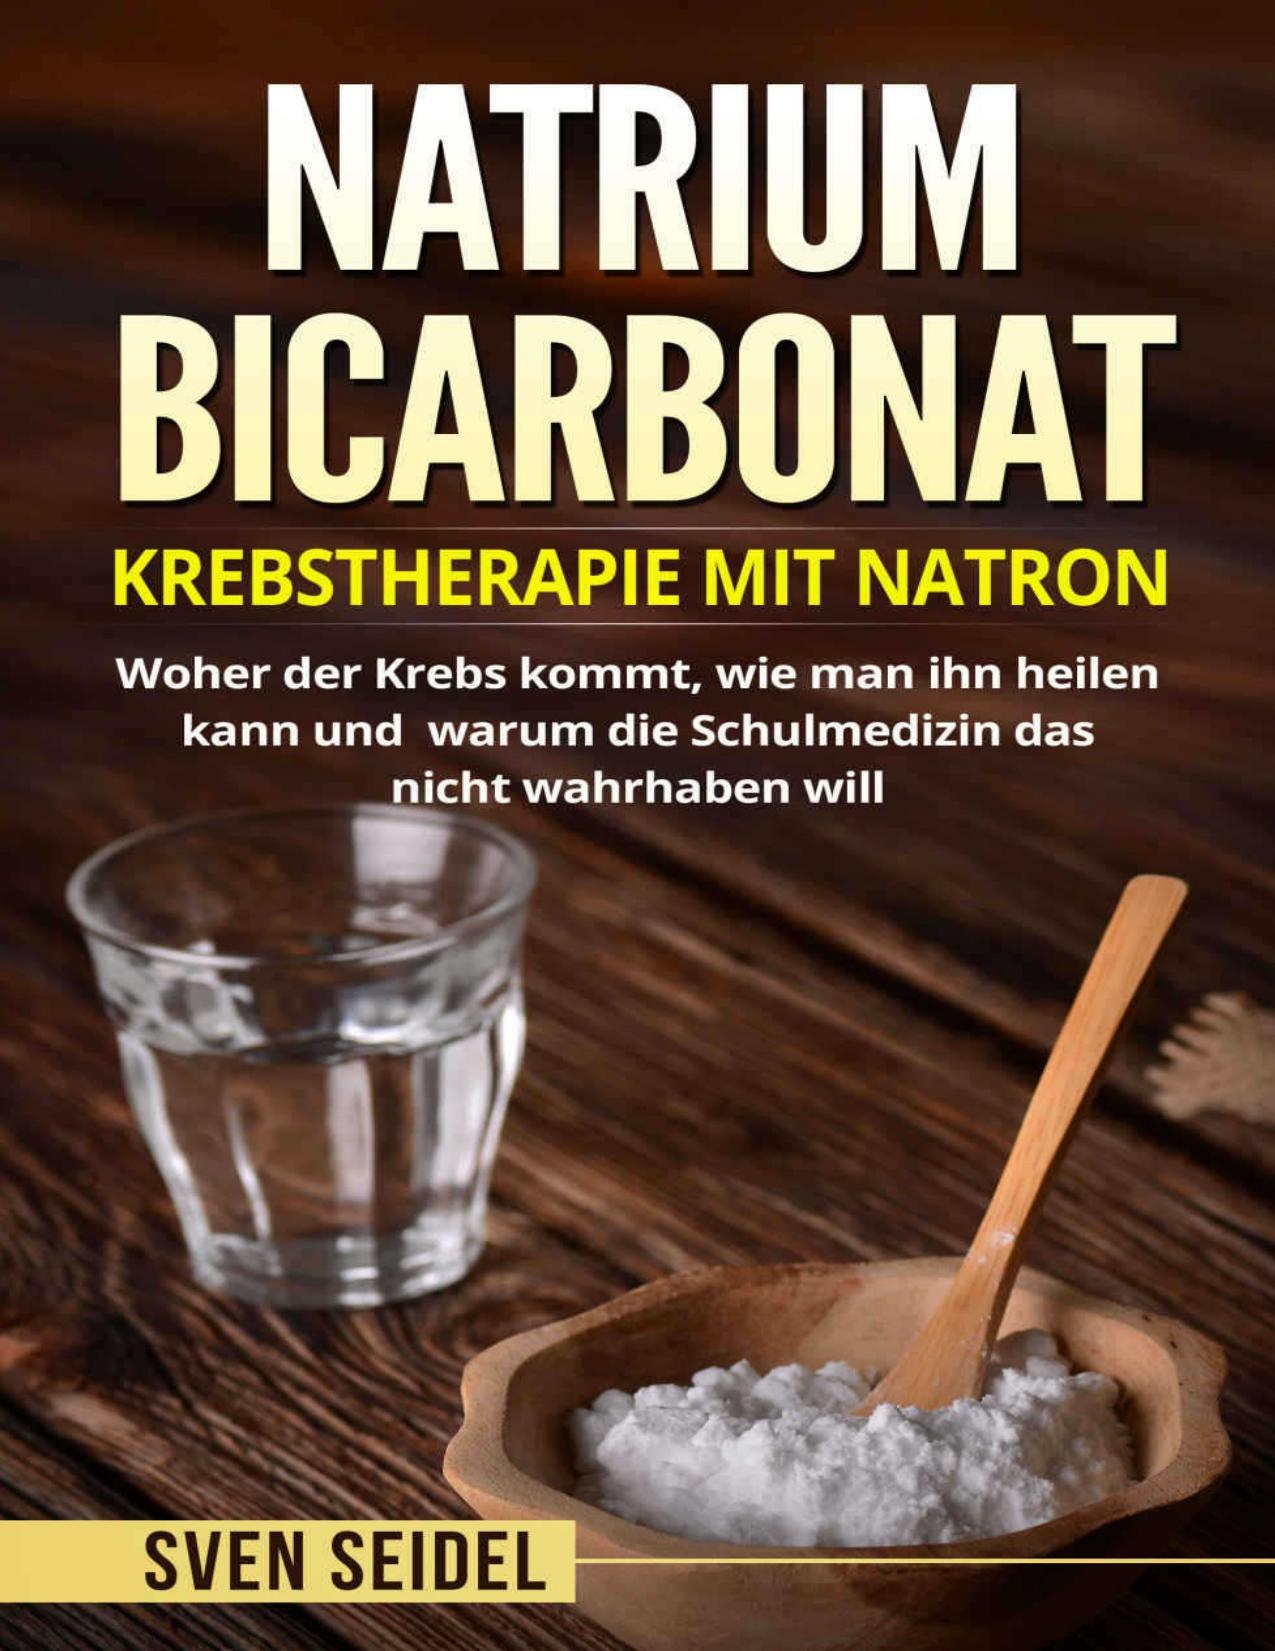 Natriumbicarbonat: Krebstherapie mit Natron. Woher der Krebs kommt, wie man ihn heilen kann und warum die Schulmedizin das nicht wahrhaben will. (German Edition)